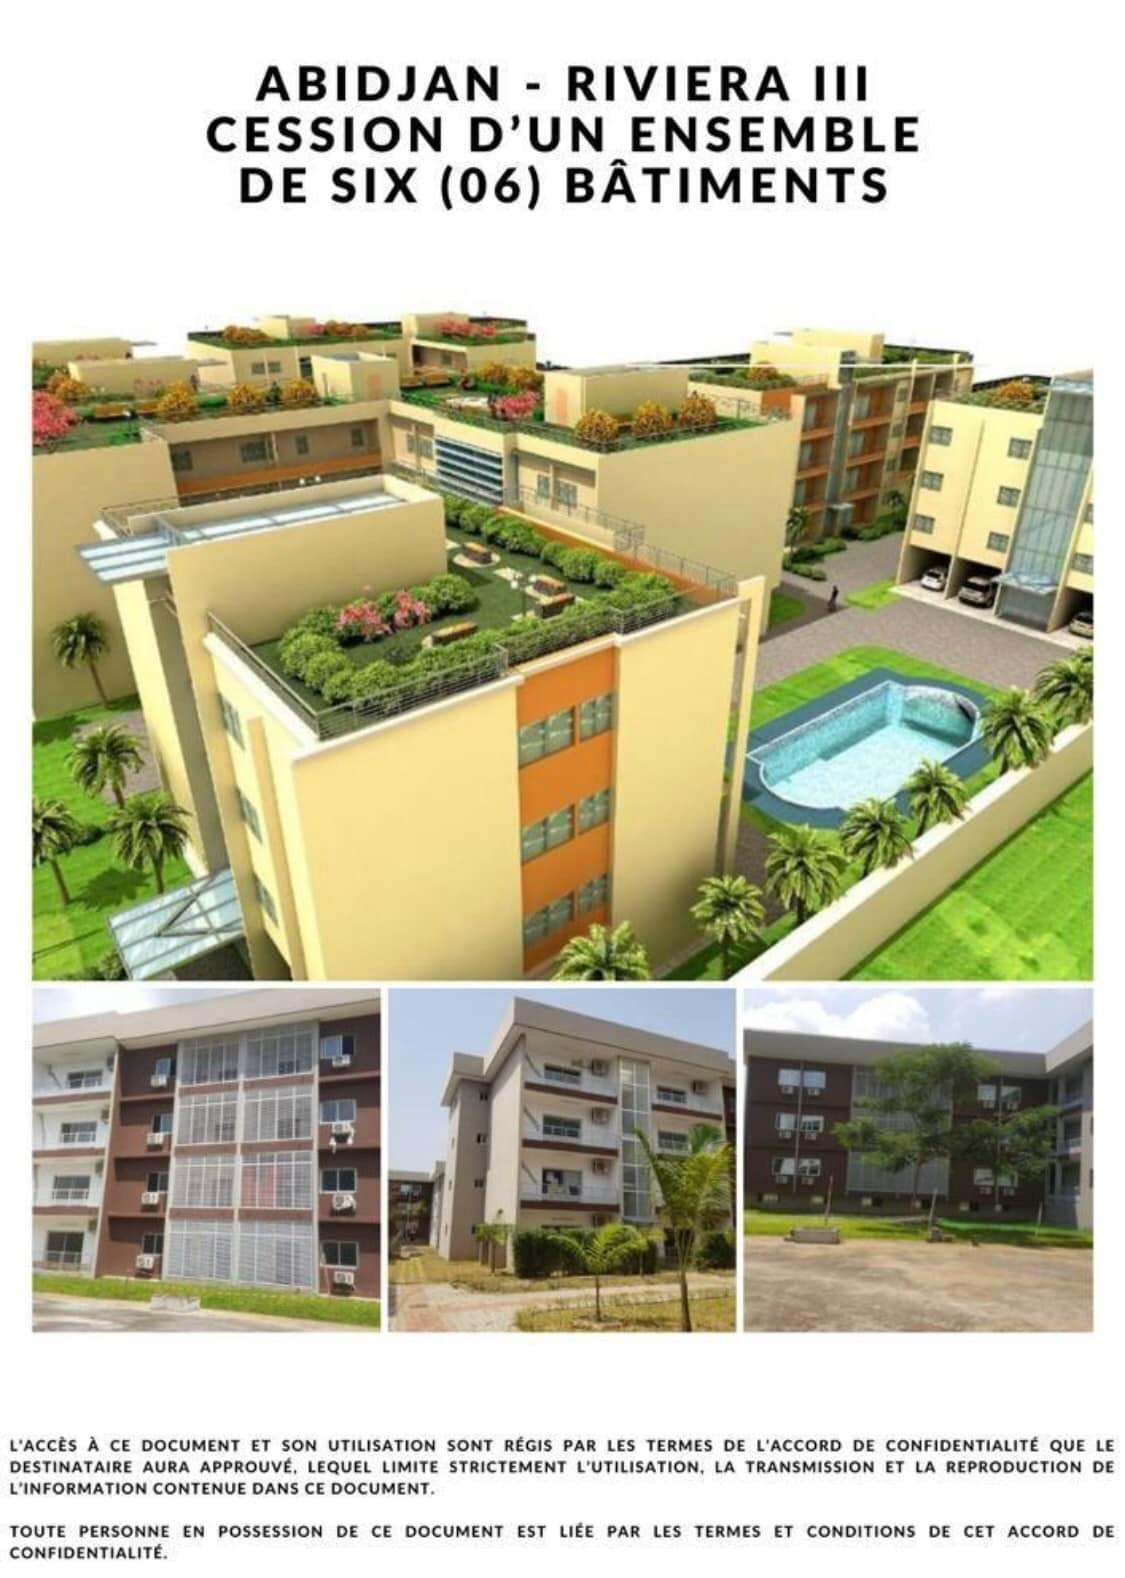 Vente d'un Immeuble : Abidjan-Cocody-Riviera (Rivera 3)